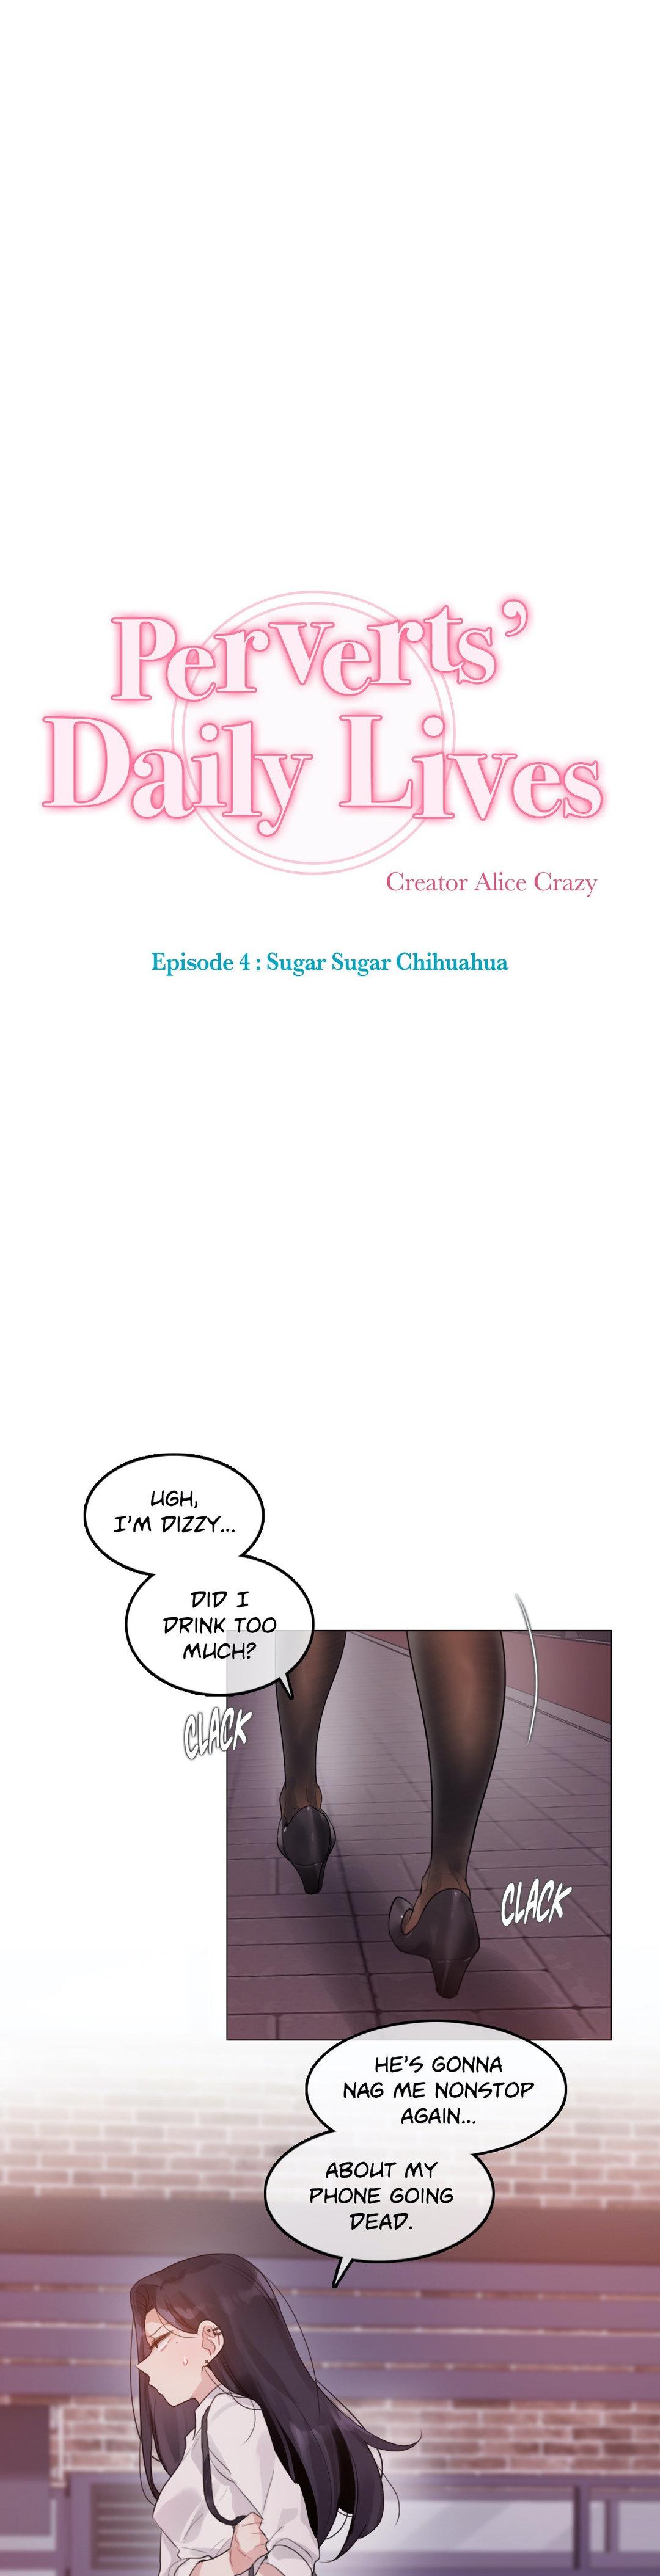 Perverts' Daily Lives Episode 4: Sugar Sugar Chihuahua 123